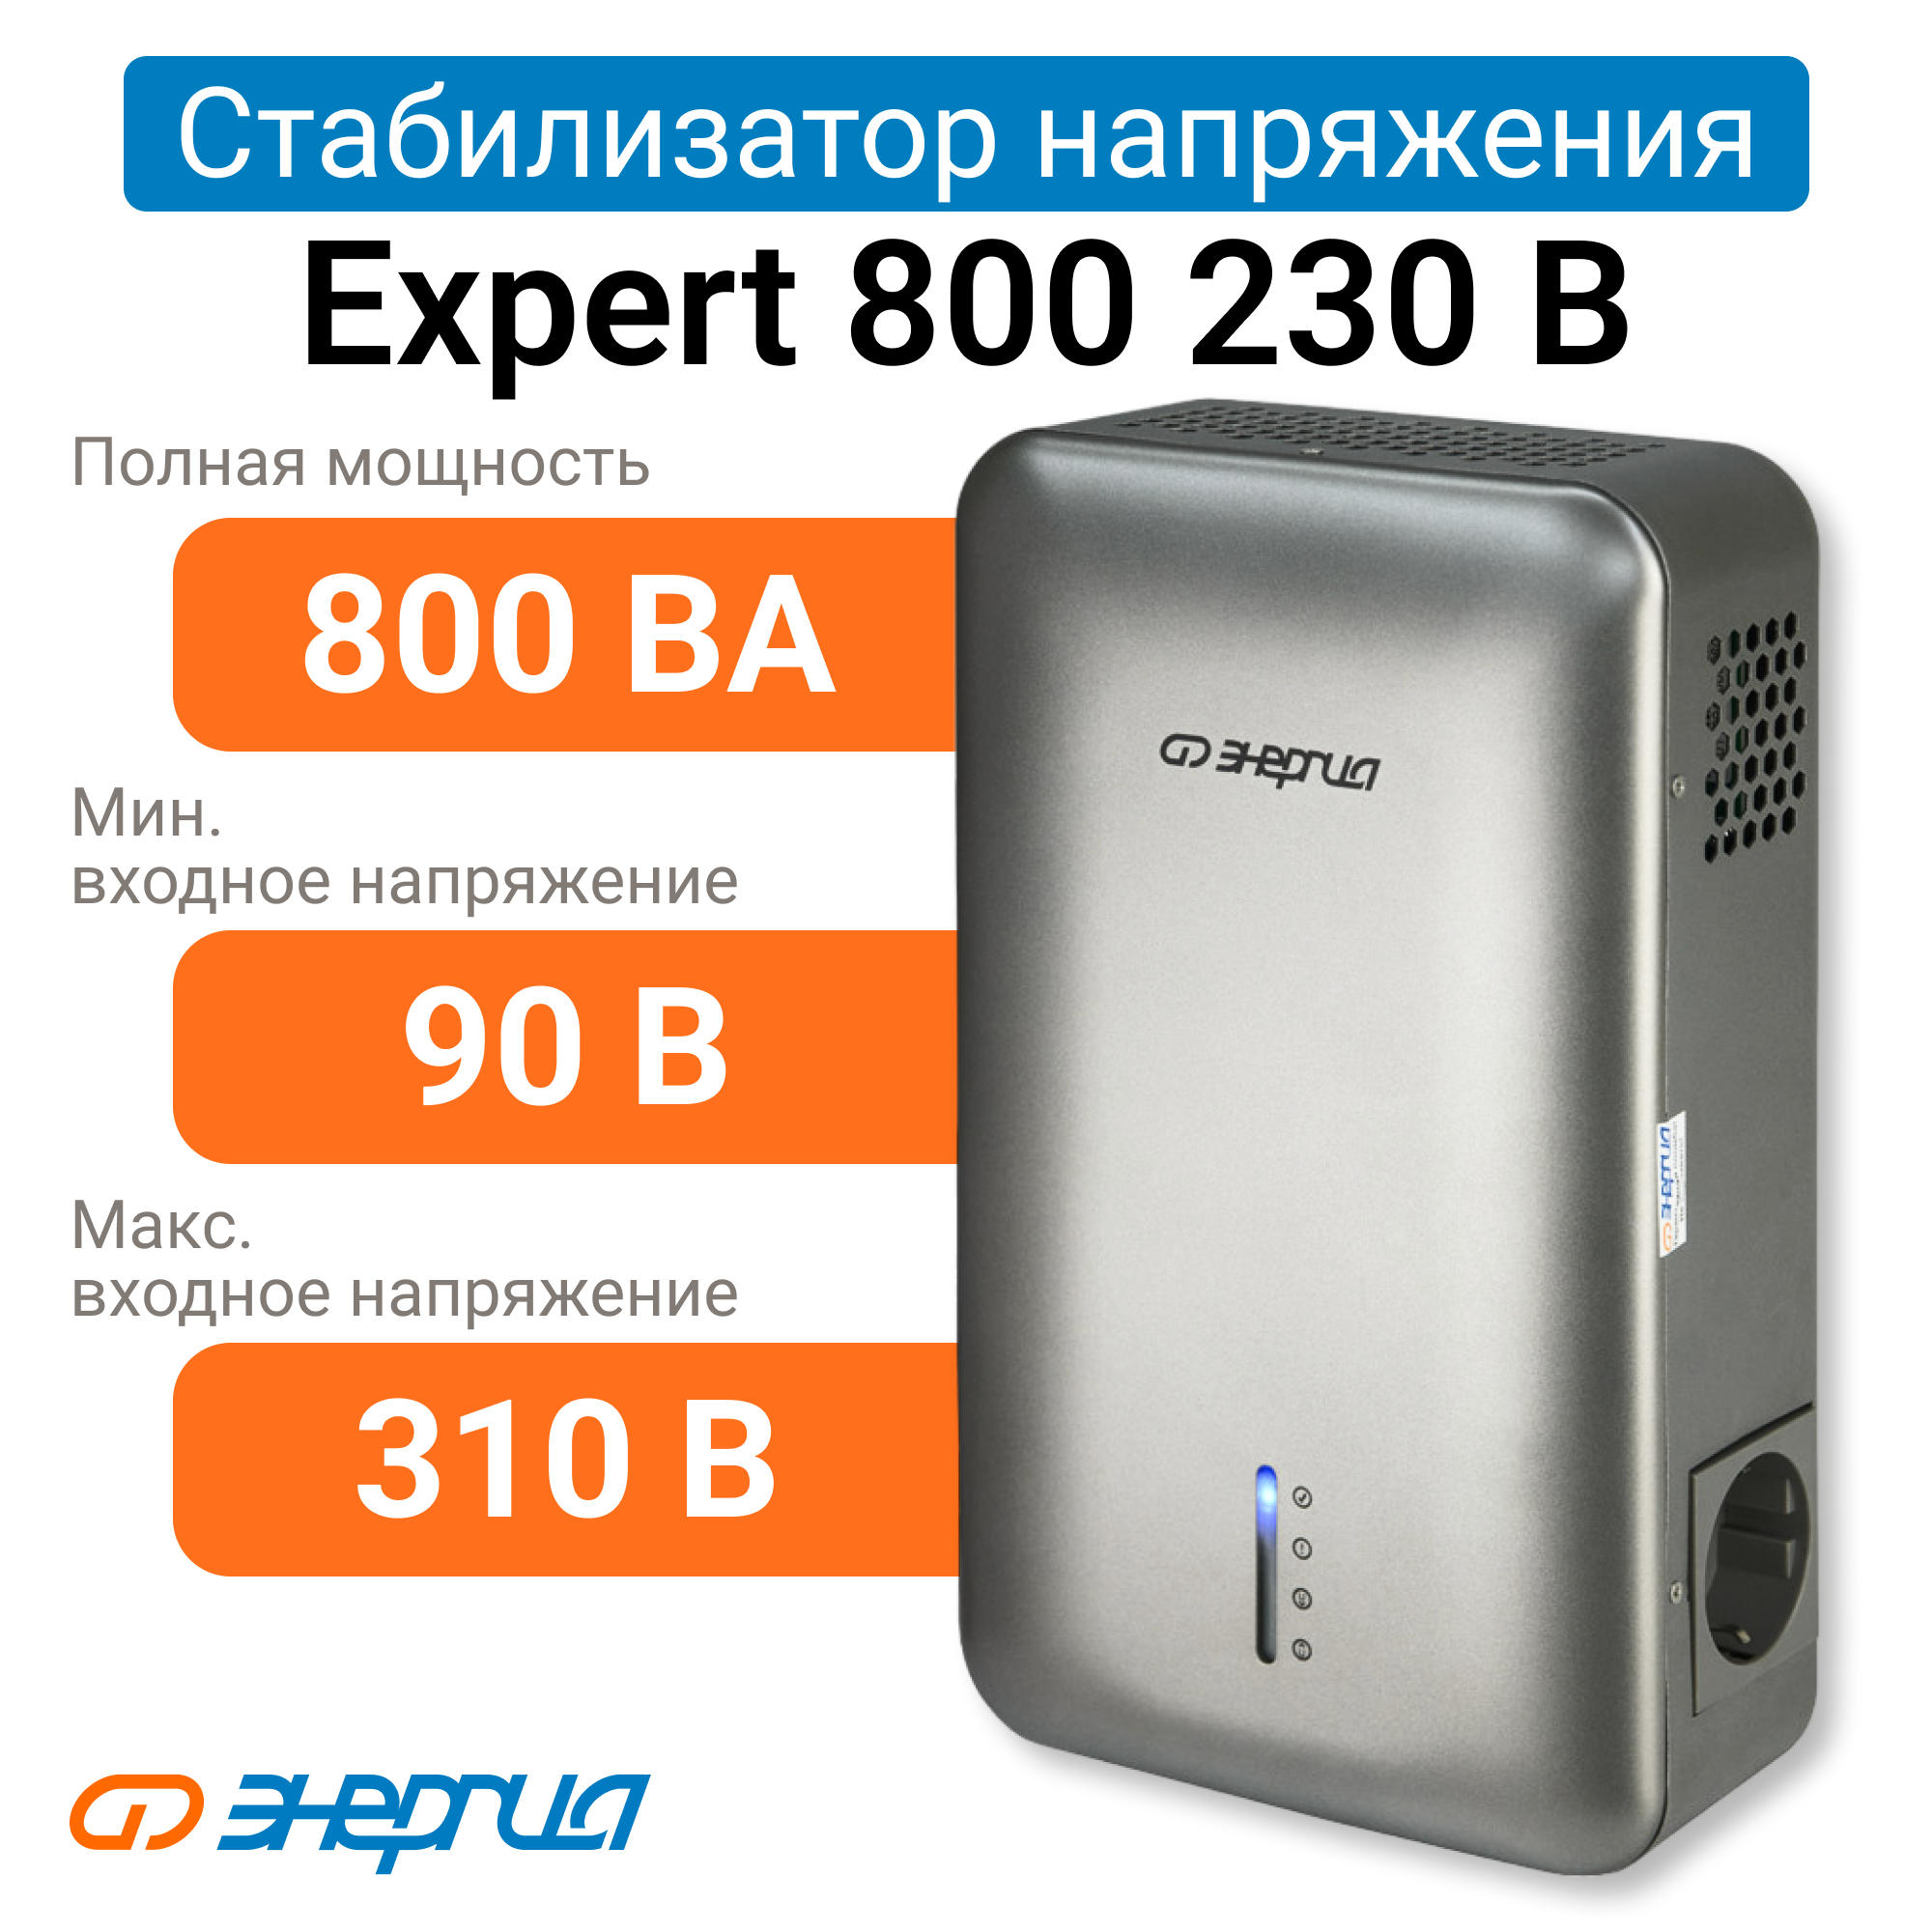 Стабилизатор напряжения Энергия Expert 800 230В (Е0101-0245) стабилизатор напряжения энергия hybrid ii 100000 е0101 0203